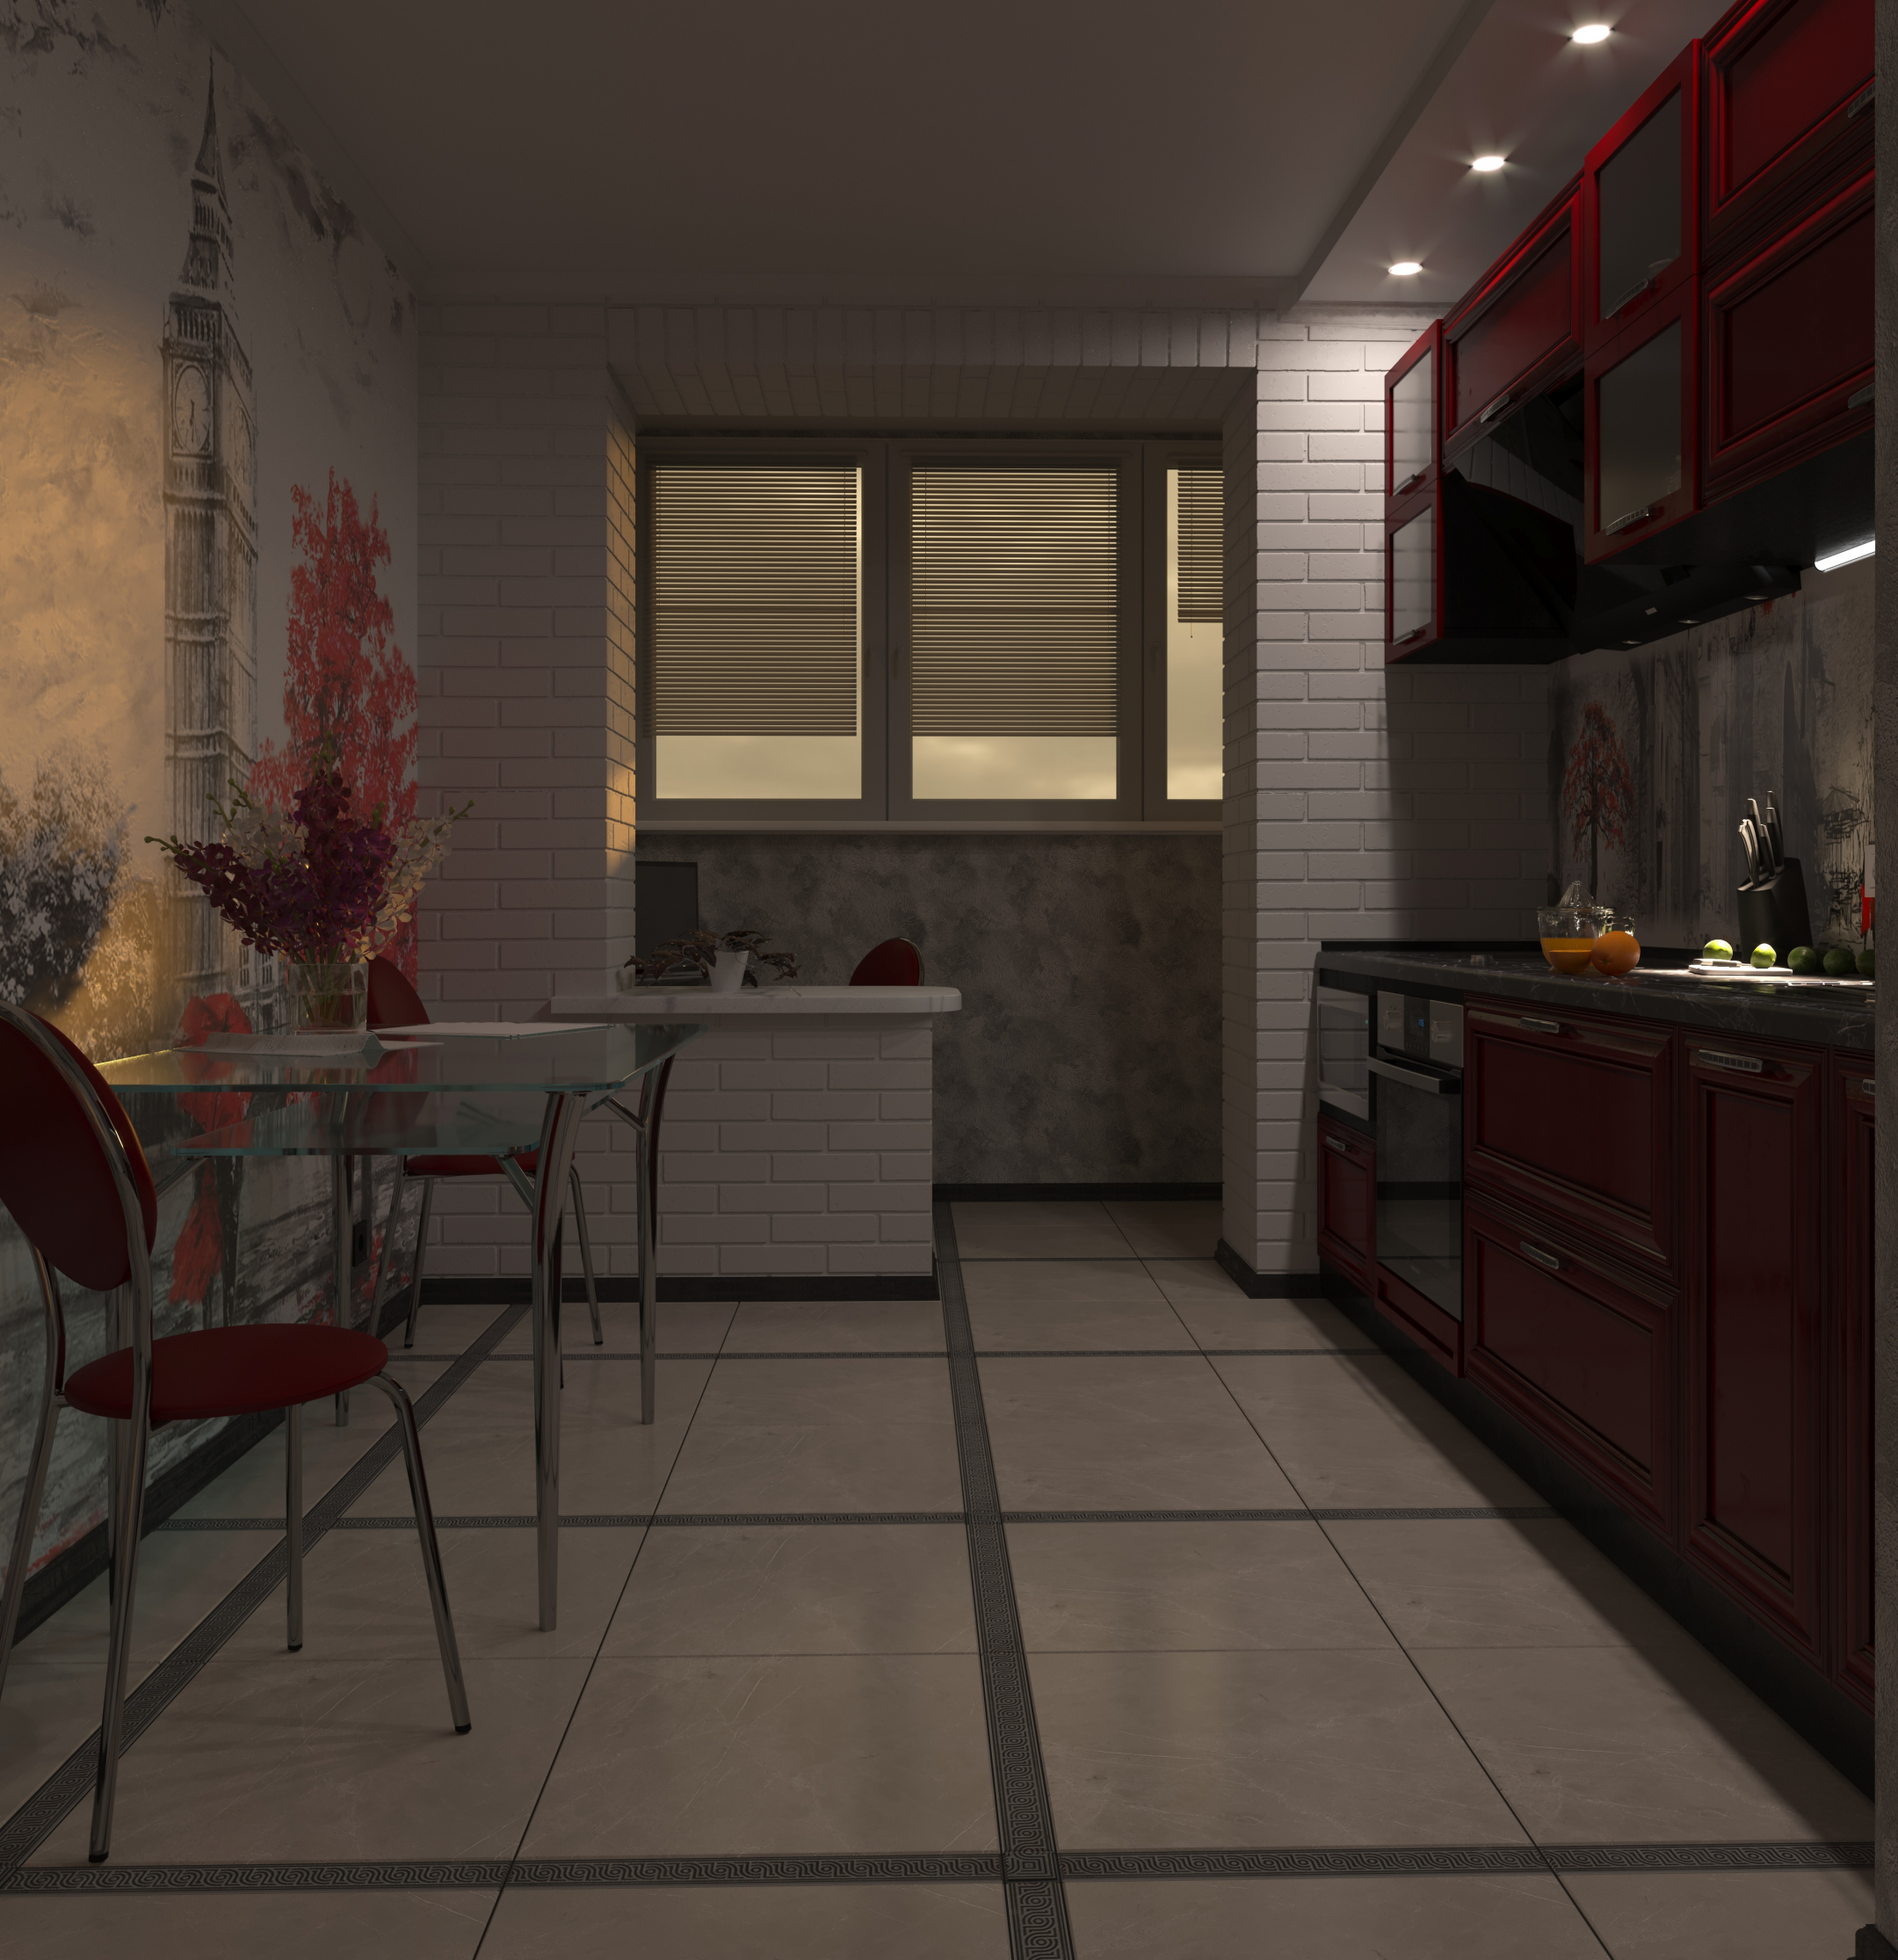 imagen de cocina de dos habitaciones en 3d max corona render